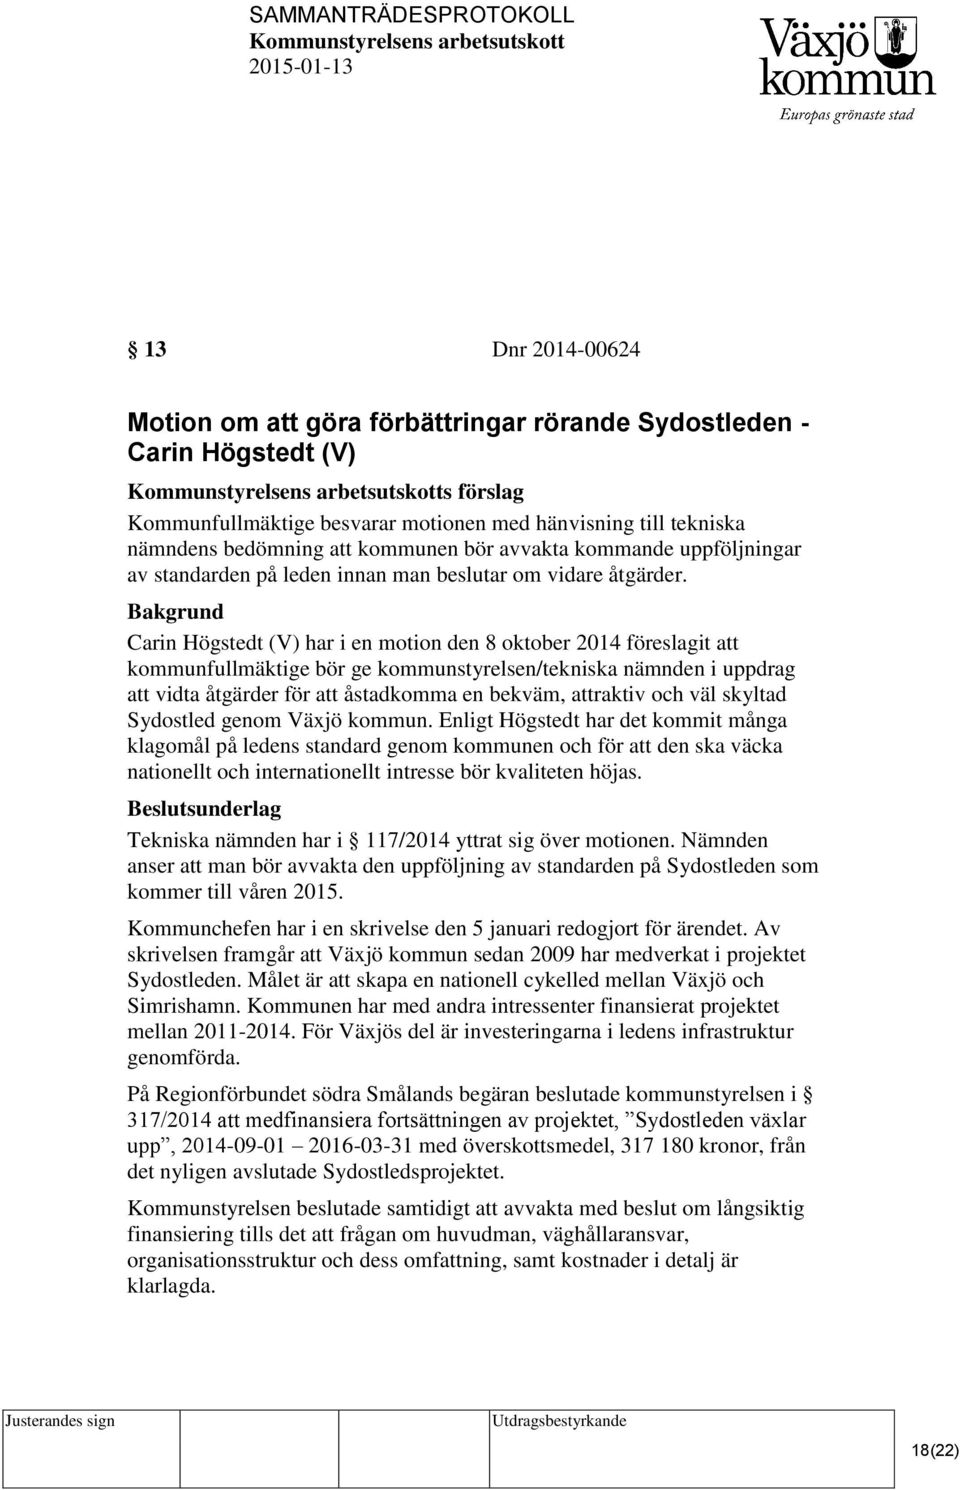 Carin Högstedt (V) har i en motion den 8 oktober 2014 föreslagit att kommunfullmäktige bör ge kommunstyrelsen/tekniska nämnden i uppdrag att vidta åtgärder för att åstadkomma en bekväm, attraktiv och